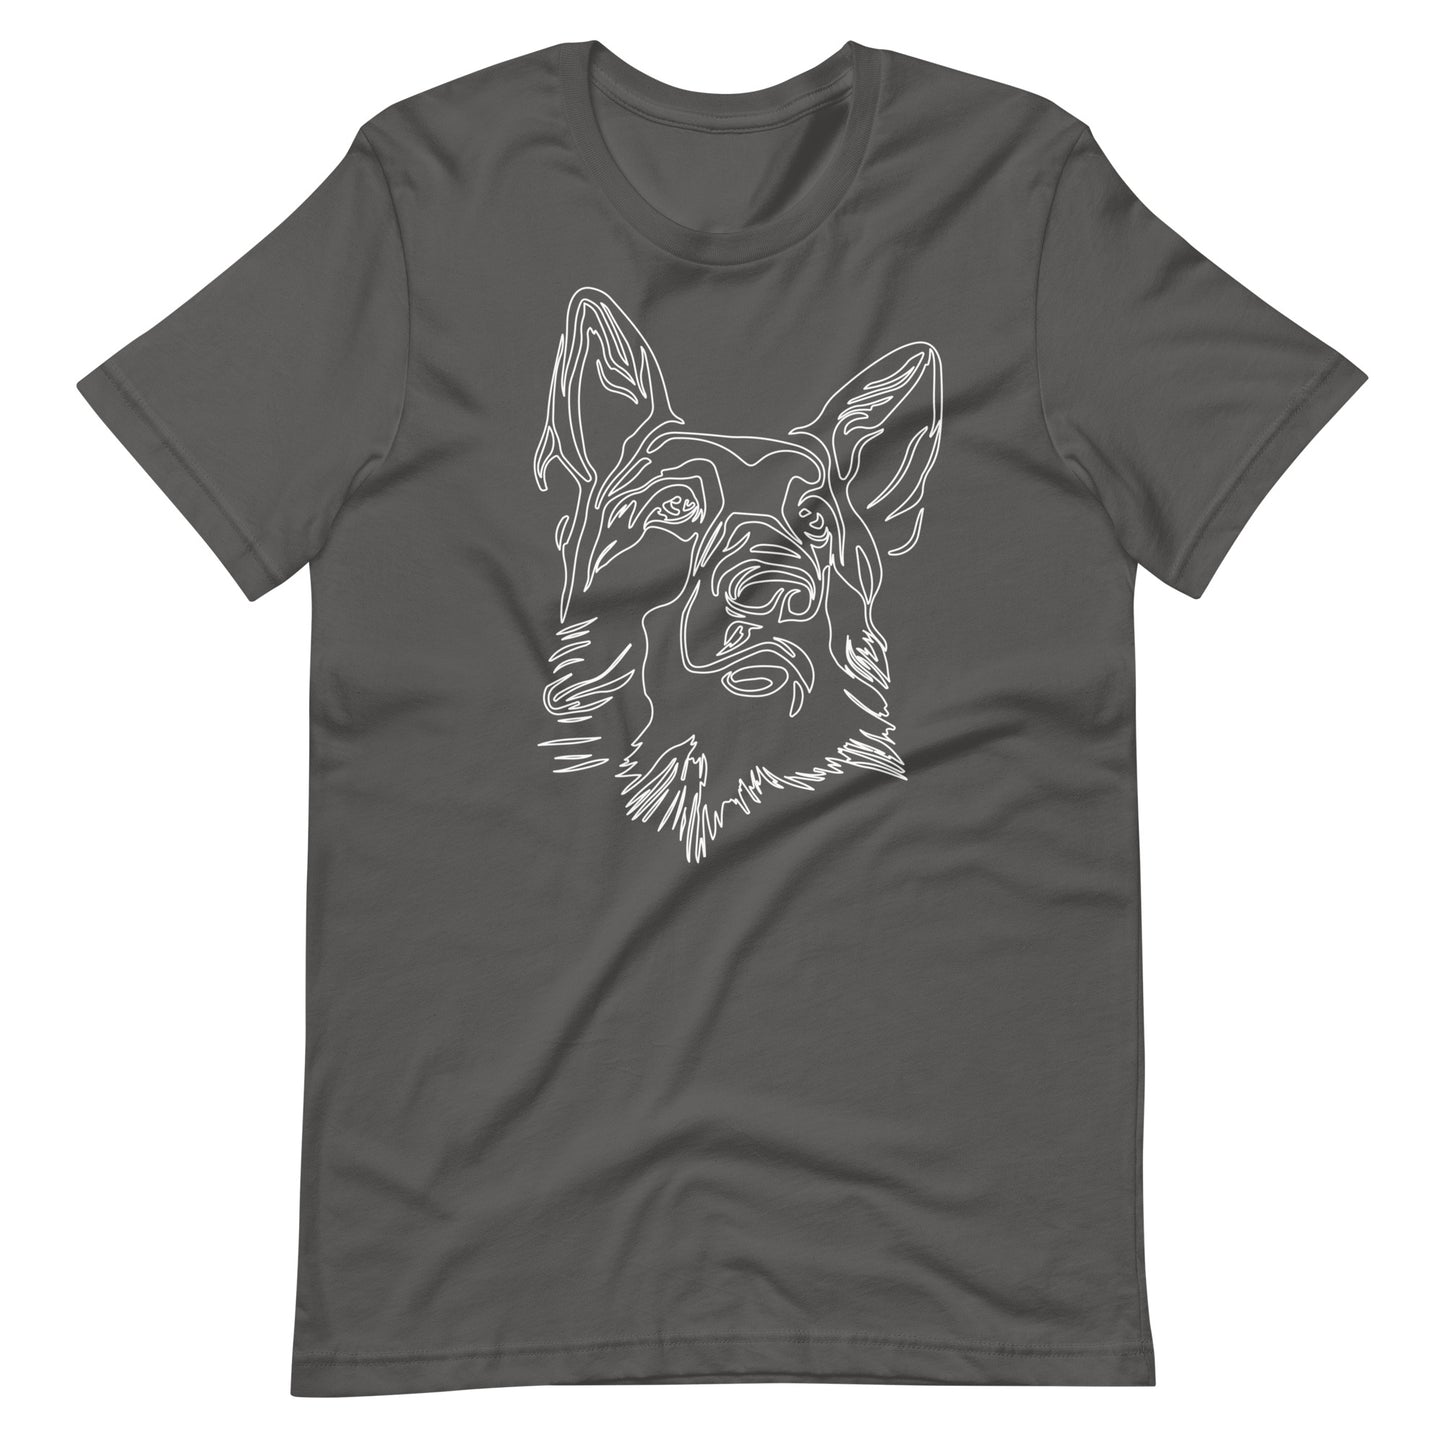 White line German Shepherd face on unisex asphalt t-shirt